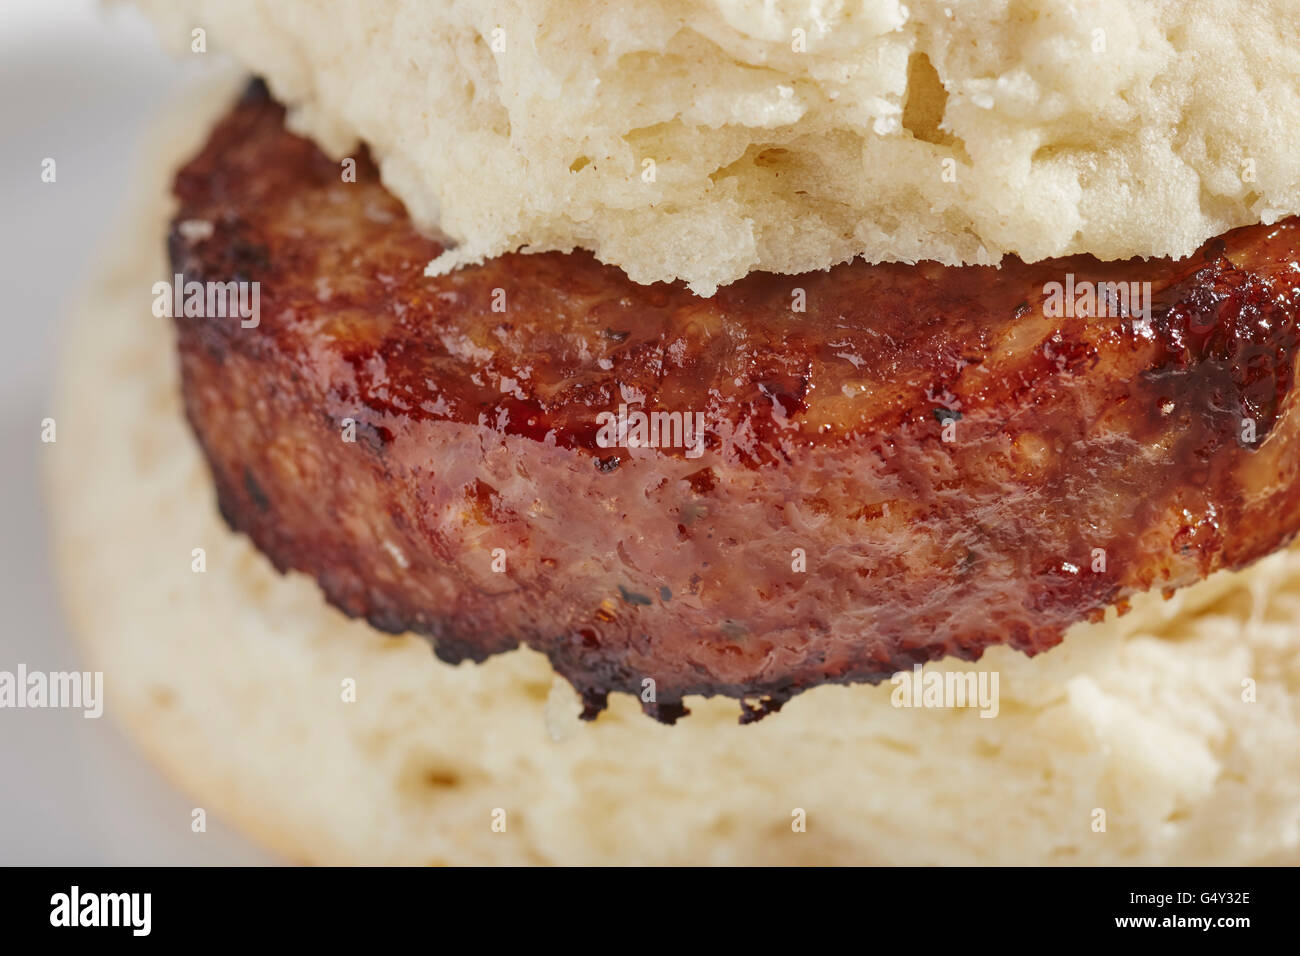 Wurst-Keks, ein klassisches Sandwich des ländlichen Amerika. Stockfoto